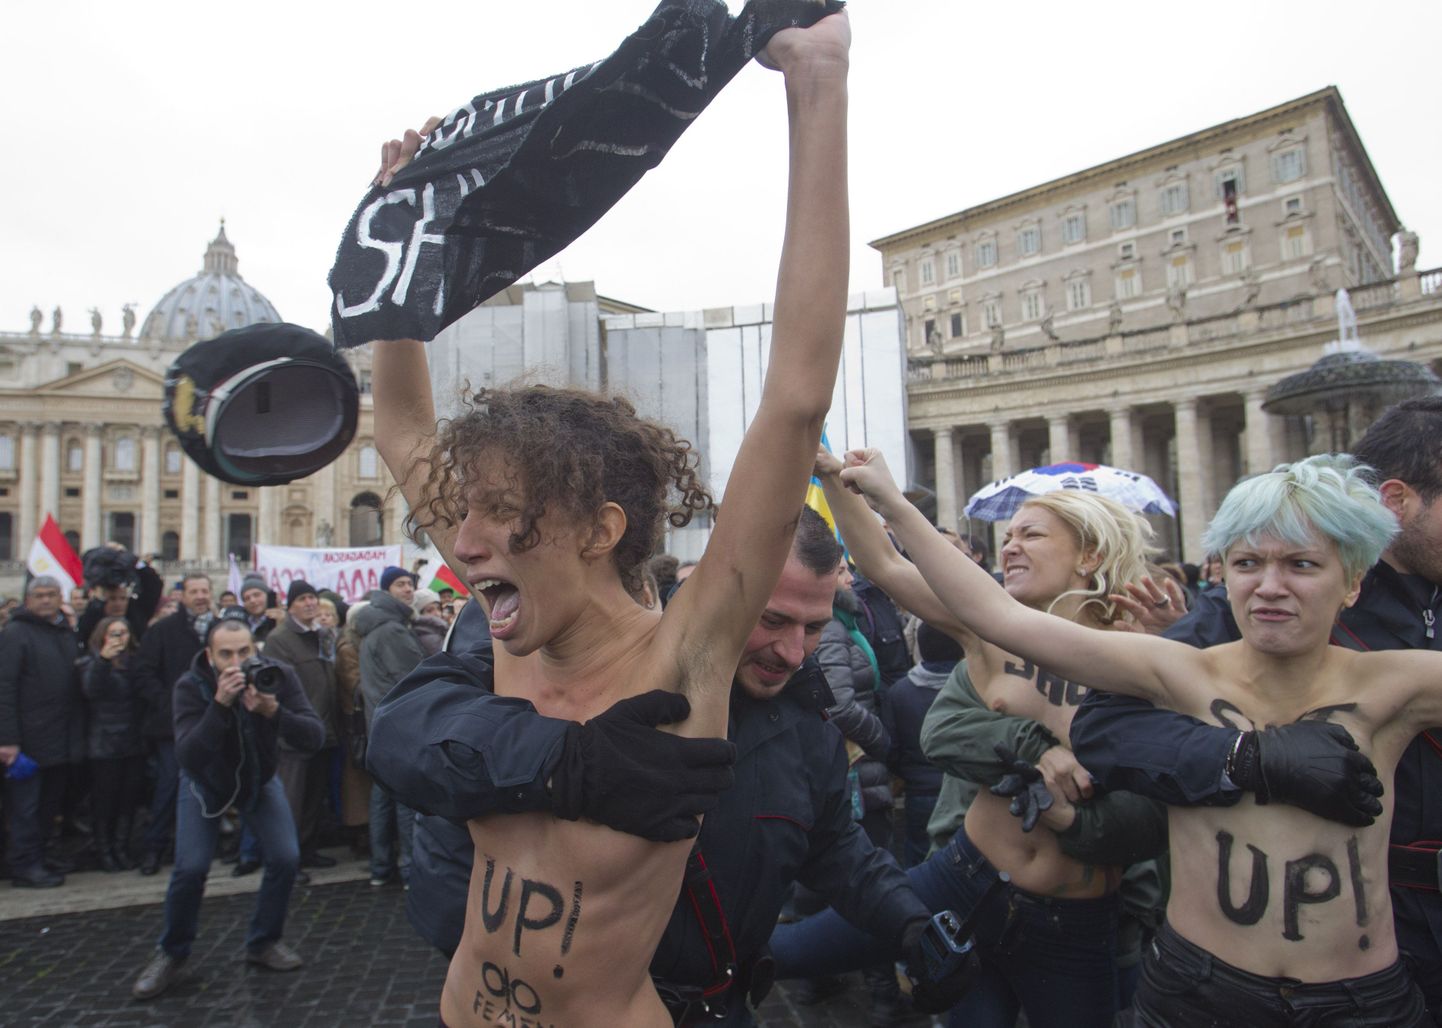 Vatikanis protesteerisid palja ülakehaga naised homode õiguste eest.